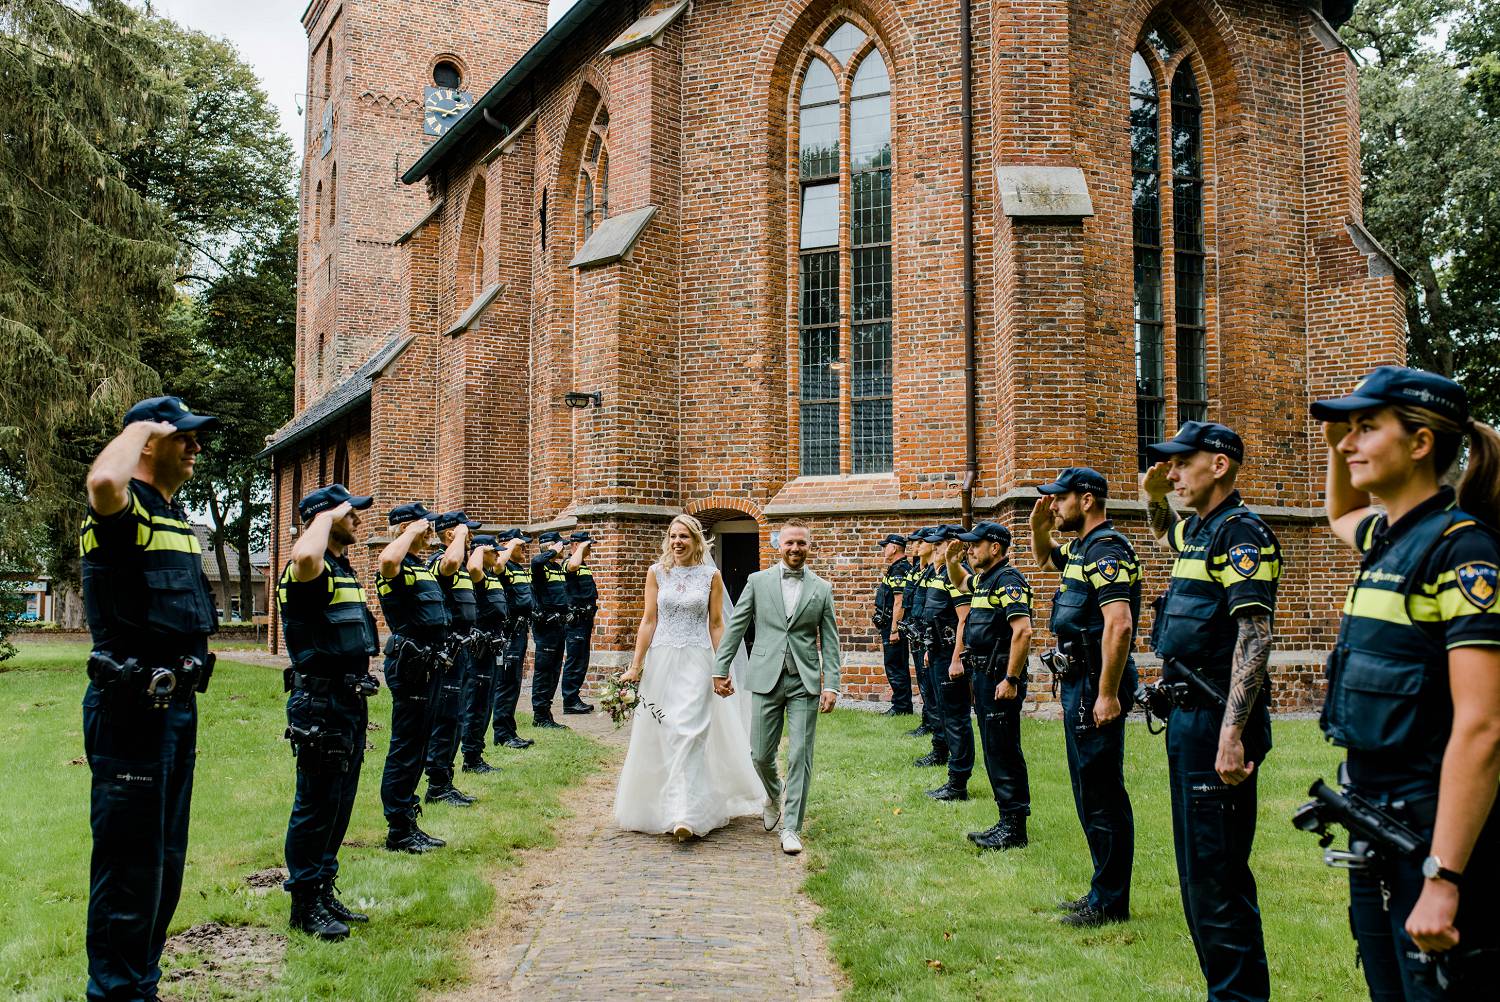 Politie erehaag bruiloft, Dorpskerk zuidlaren, Trouwen Zuidlaren, trouwfotograaf Drenthe